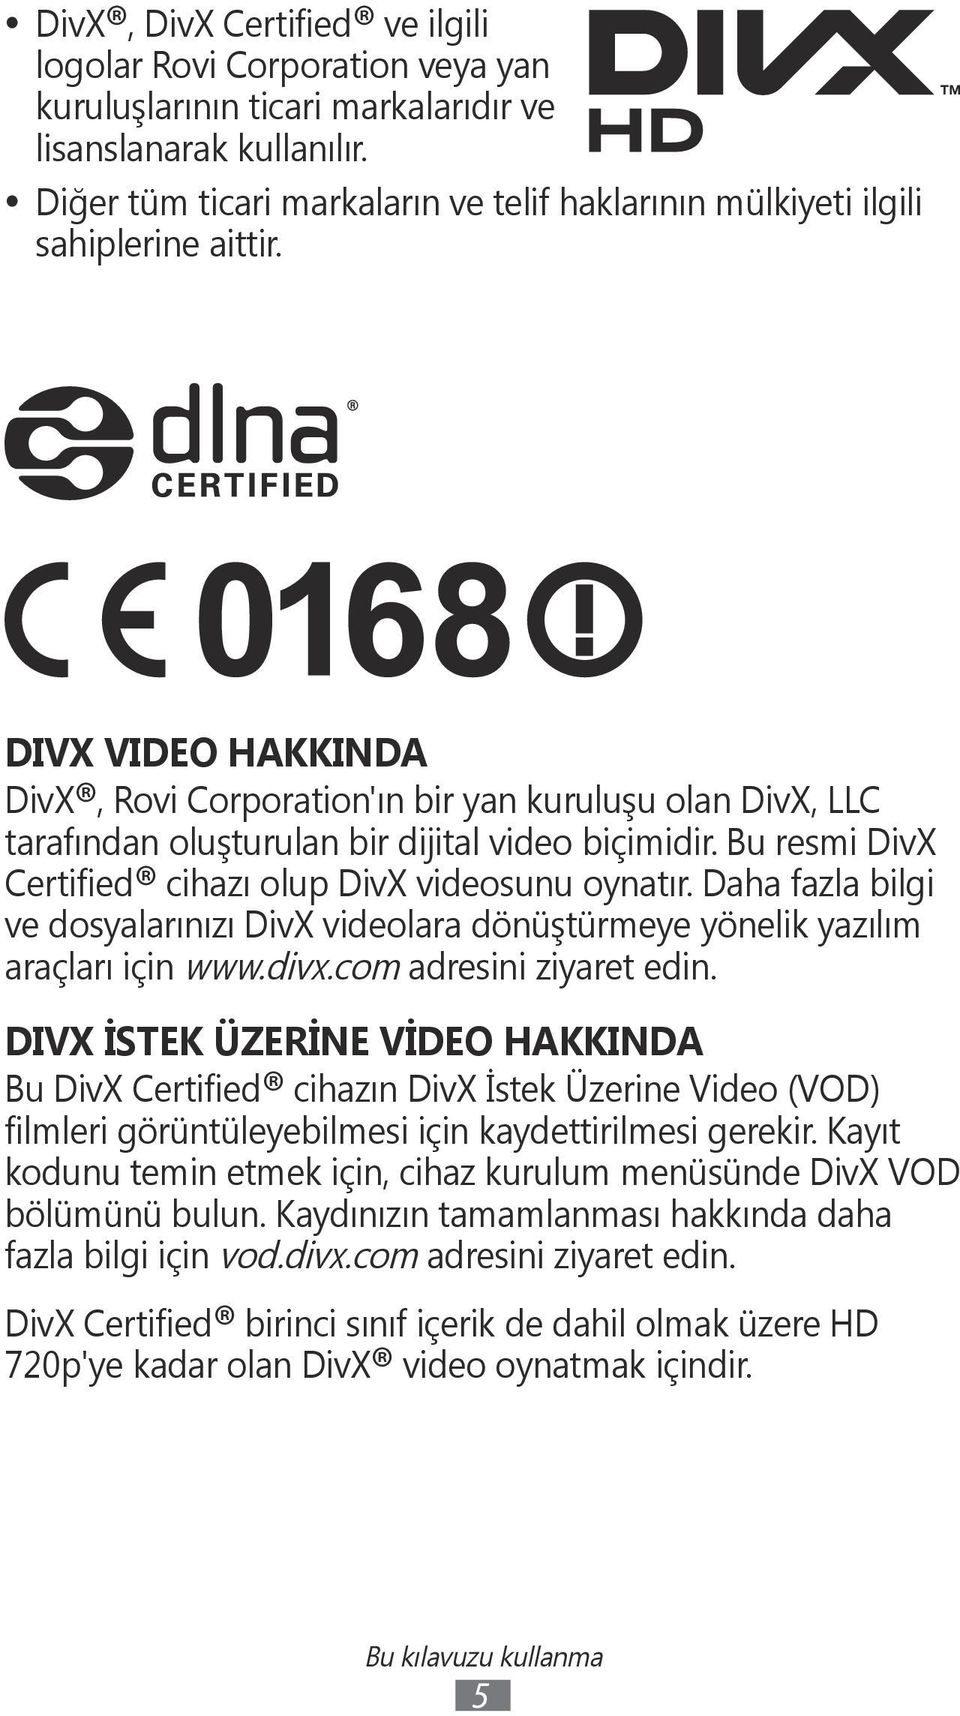 DIVX VIDEO HAKKINDA DivX, Rovi Corporation'ın bir yan kuruluşu olan DivX, LLC tarafından oluşturulan bir dijital video biçimidir. Bu resmi DivX Certified cihazı olup DivX videosunu oynatır.